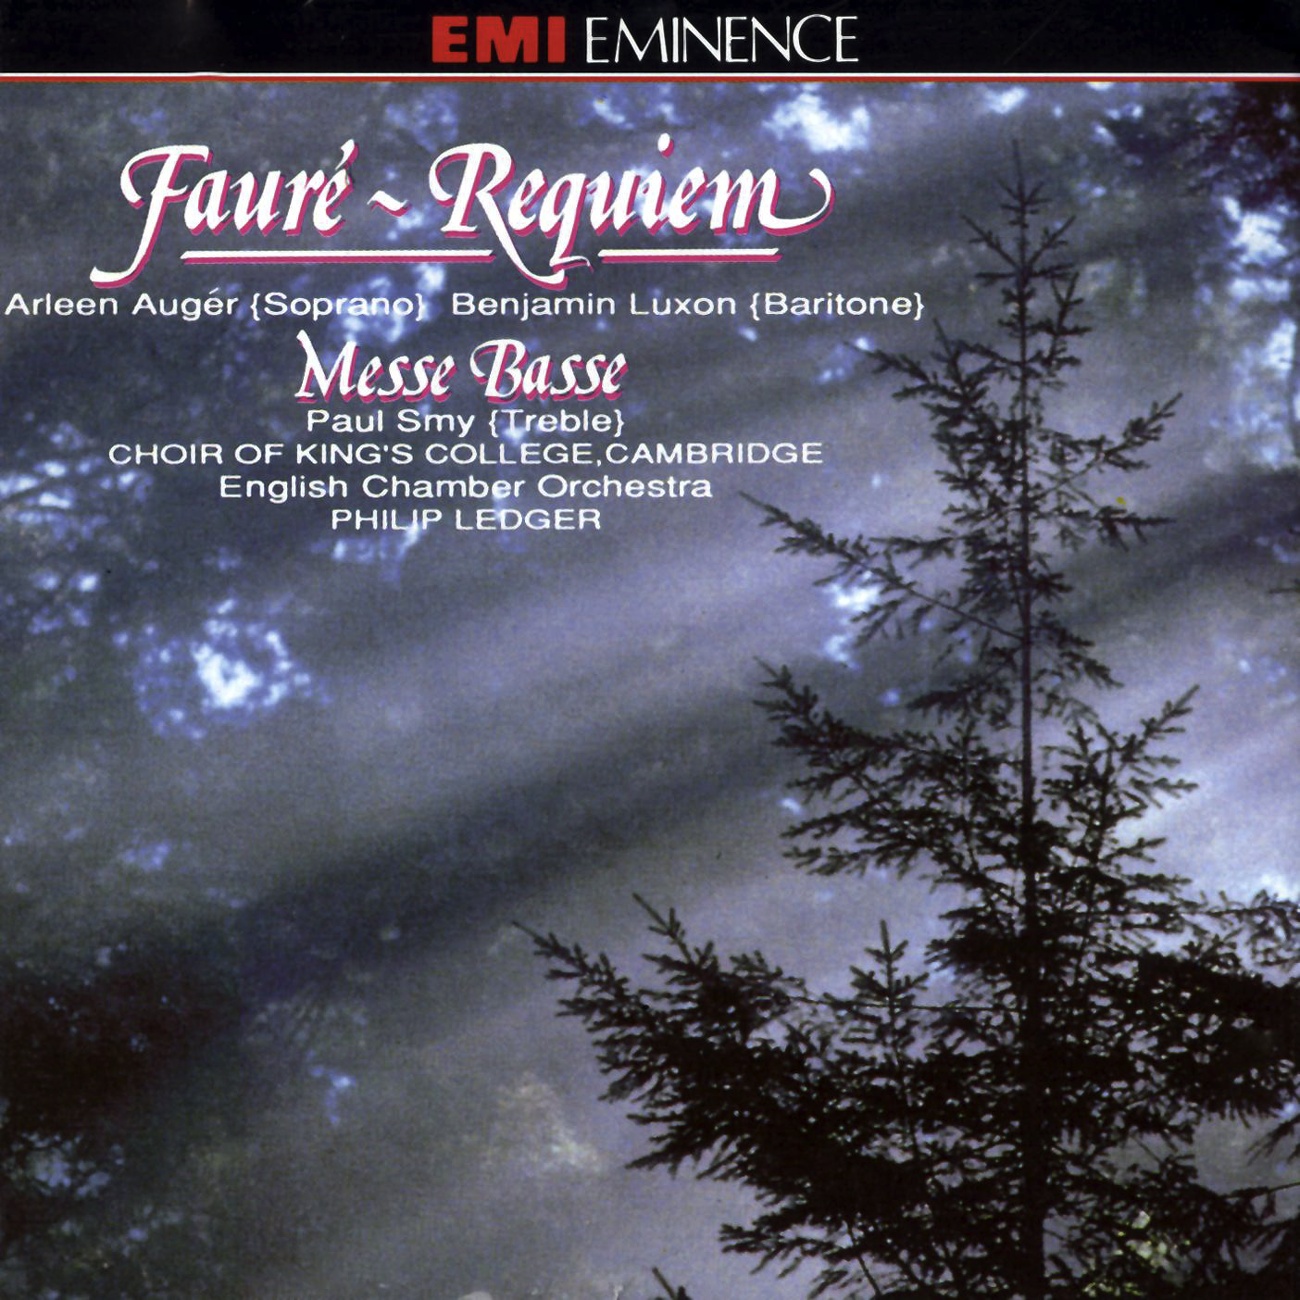 Faure: Requiem, Op. 48: Pie Jesu Soprano Solo